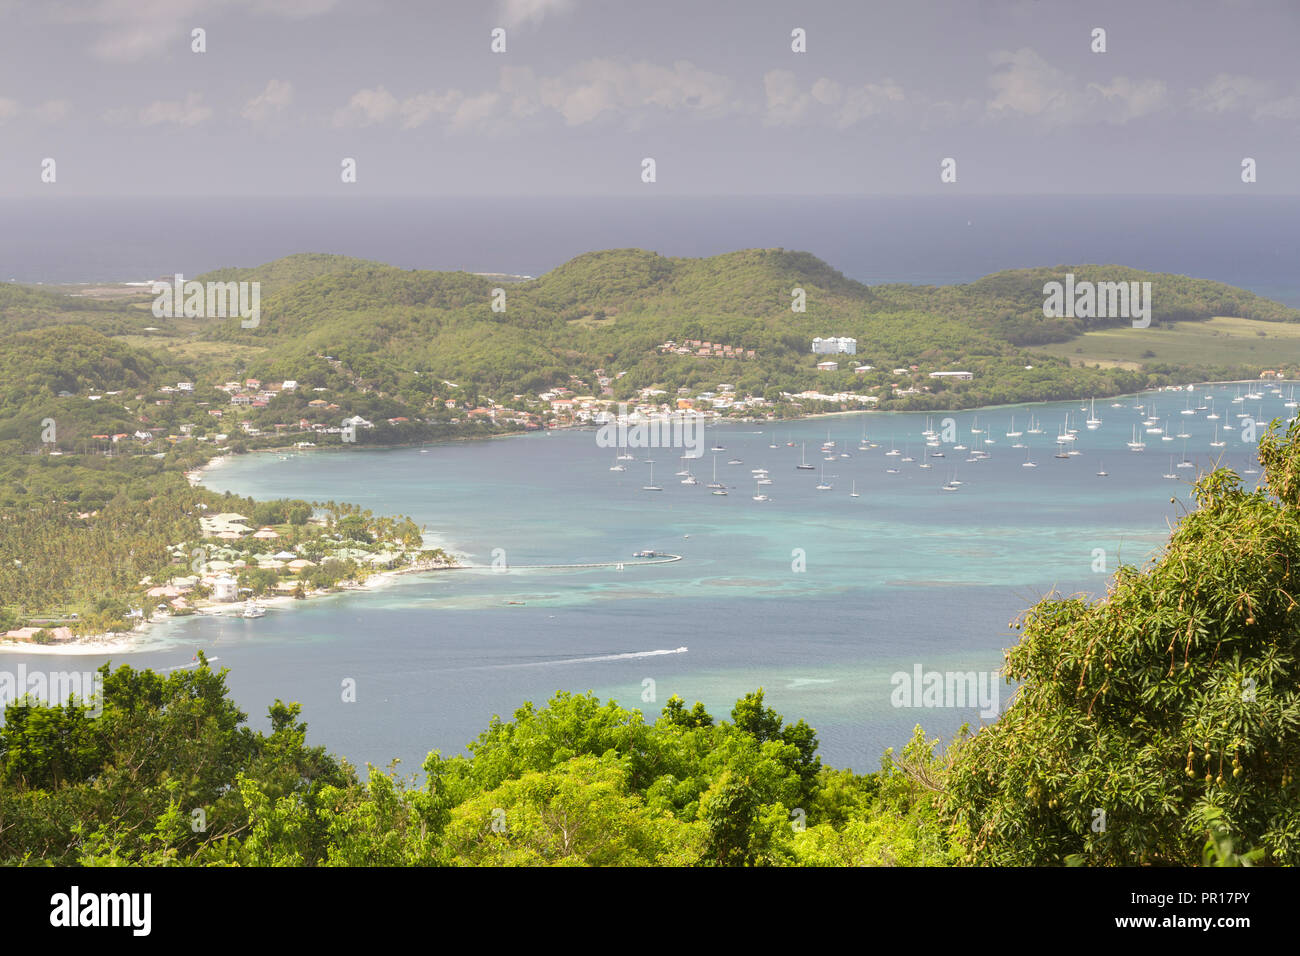 Das tropische Inselparadies von Martinique, West Indies, Karibik, Zentral- und Lateinamerika Stockfoto